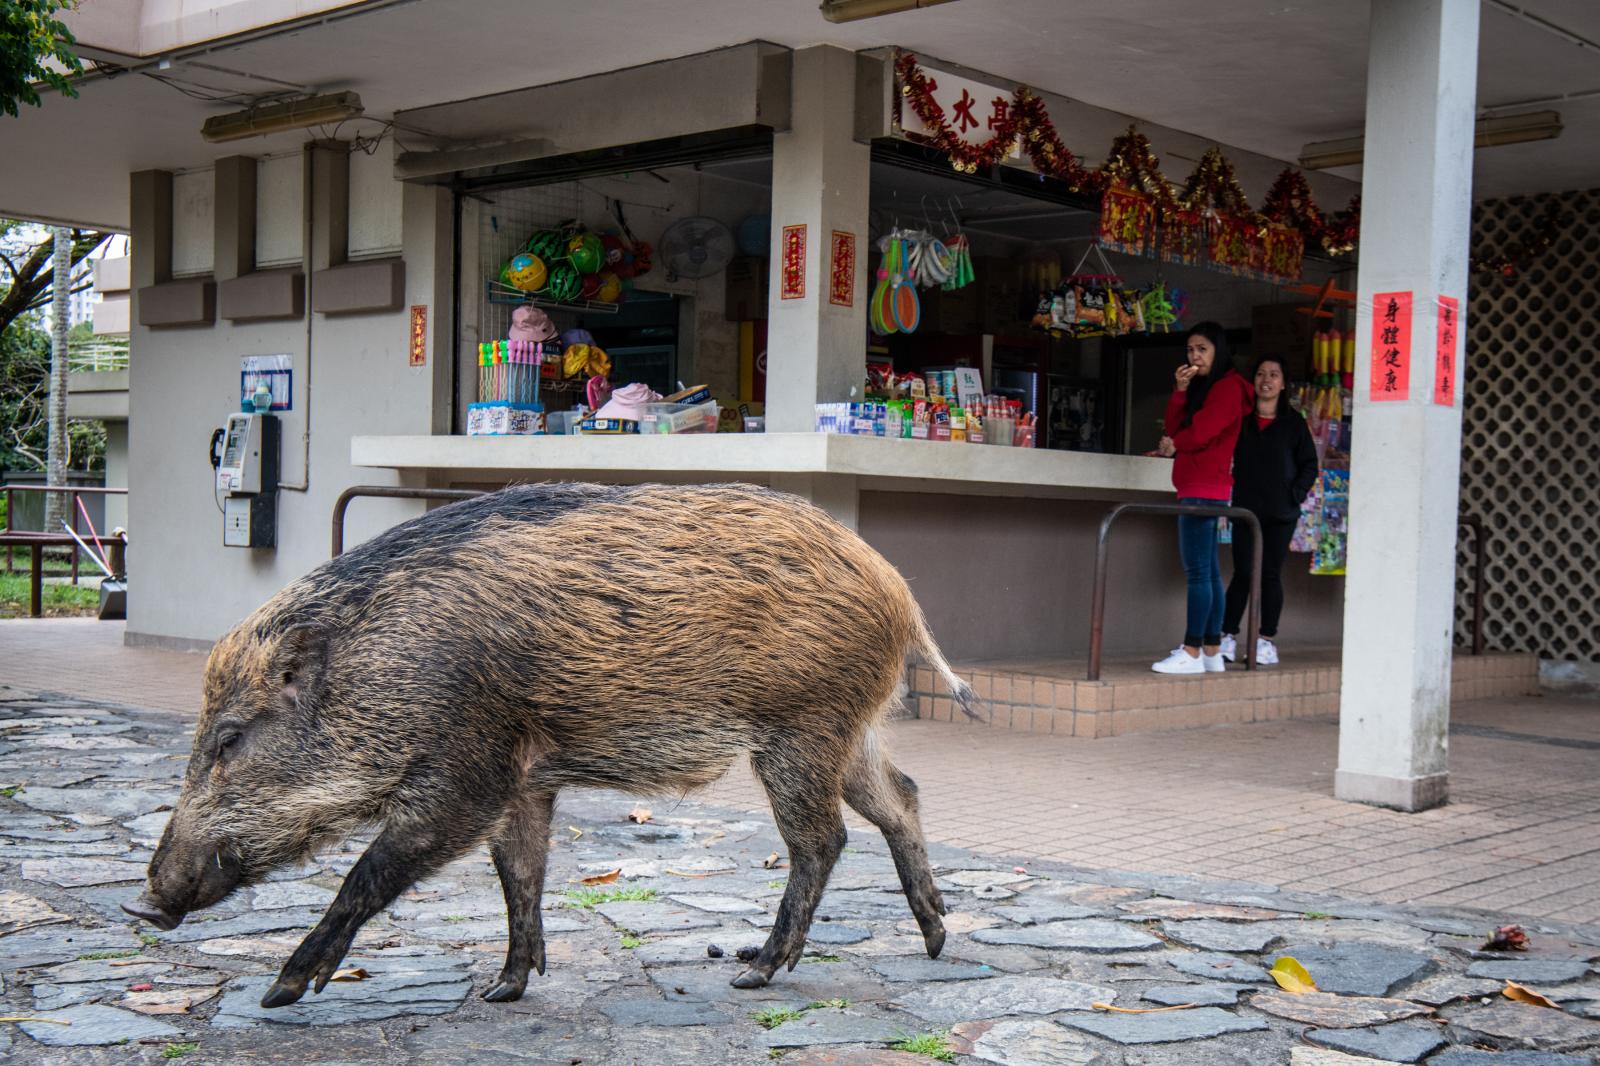 Hong Kong's Wild Boar Problem